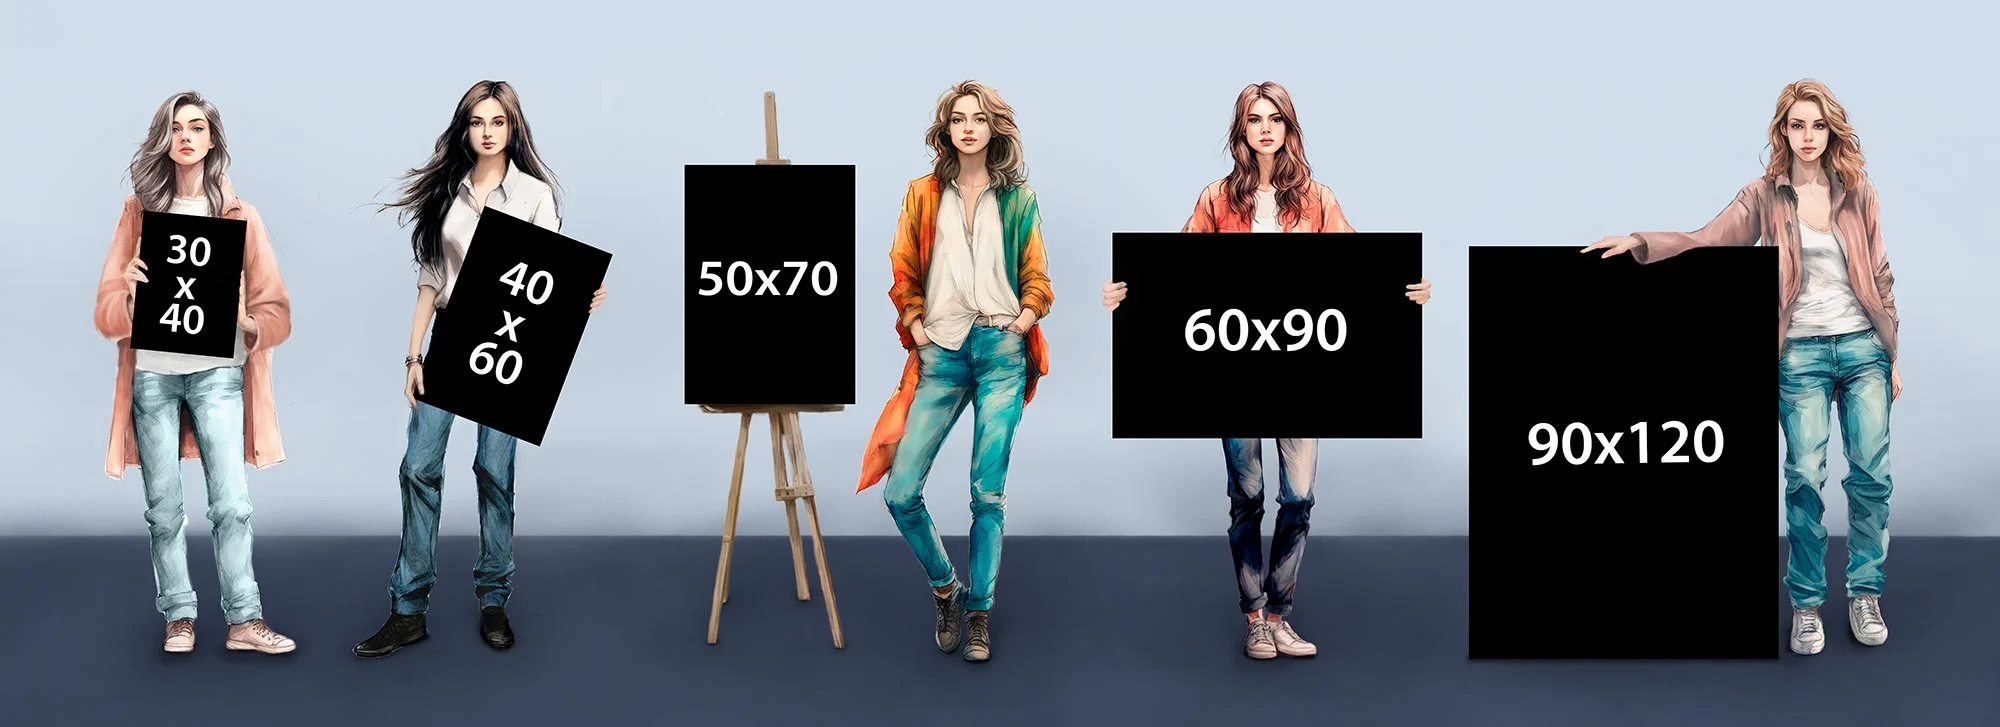 5 девушек держат в руках полотна на которых написаны размеры картин: 30 на 40 см, 40 на 60 см, 50 на 70 см, 60 на 90 см, 90 на 120 см.